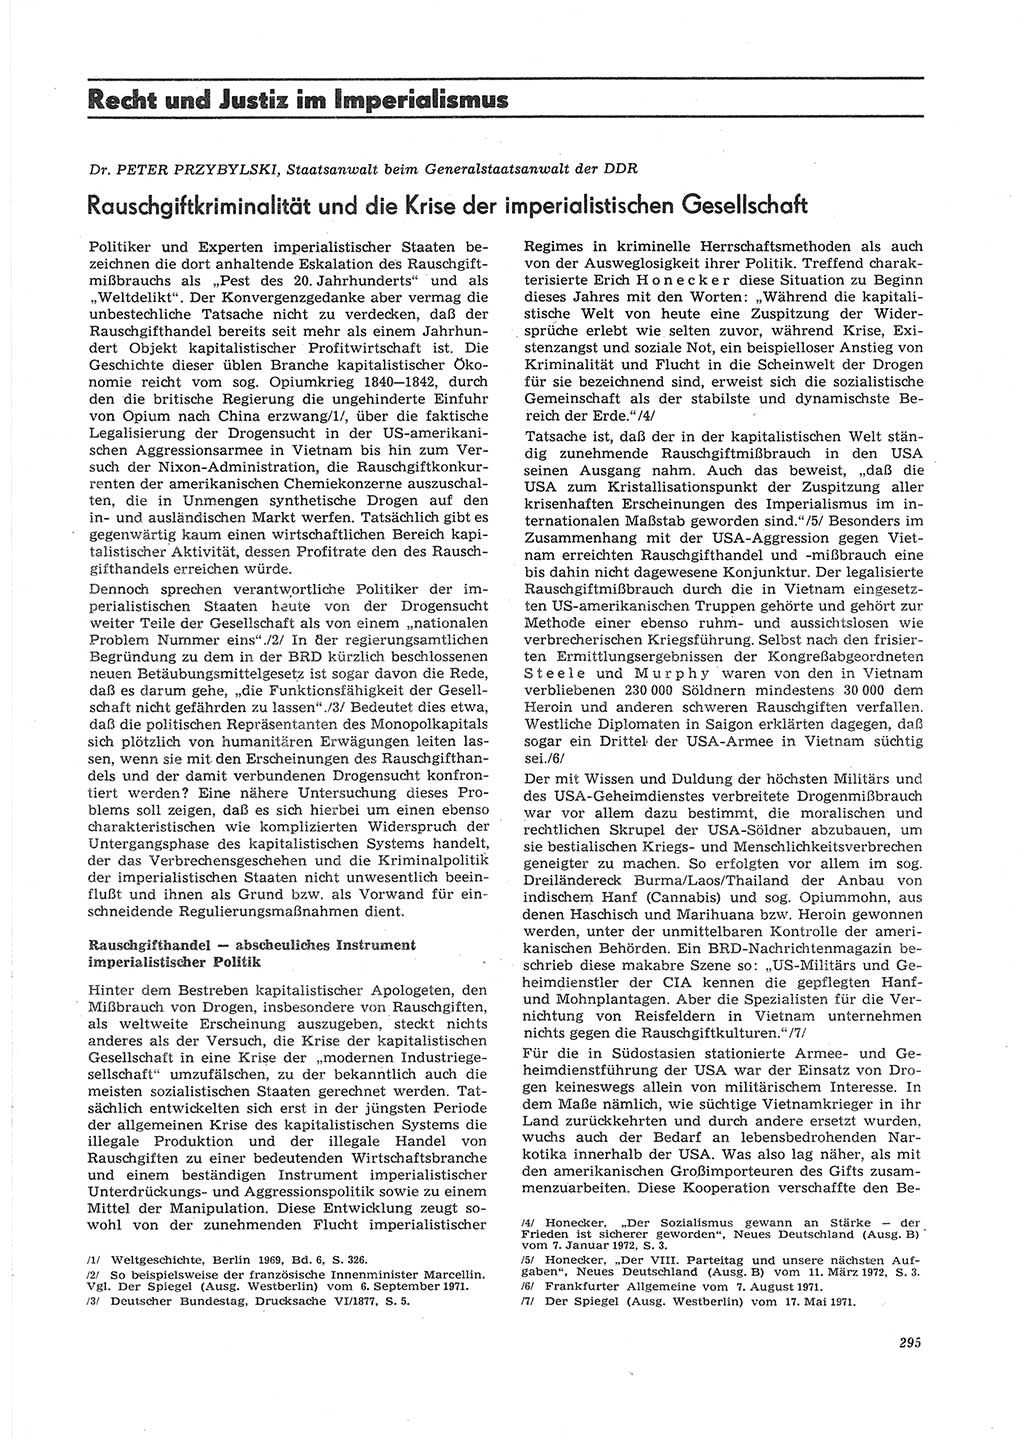 Neue Justiz (NJ), Zeitschrift für Recht und Rechtswissenschaft [Deutsche Demokratische Republik (DDR)], 26. Jahrgang 1972, Seite 295 (NJ DDR 1972, S. 295)